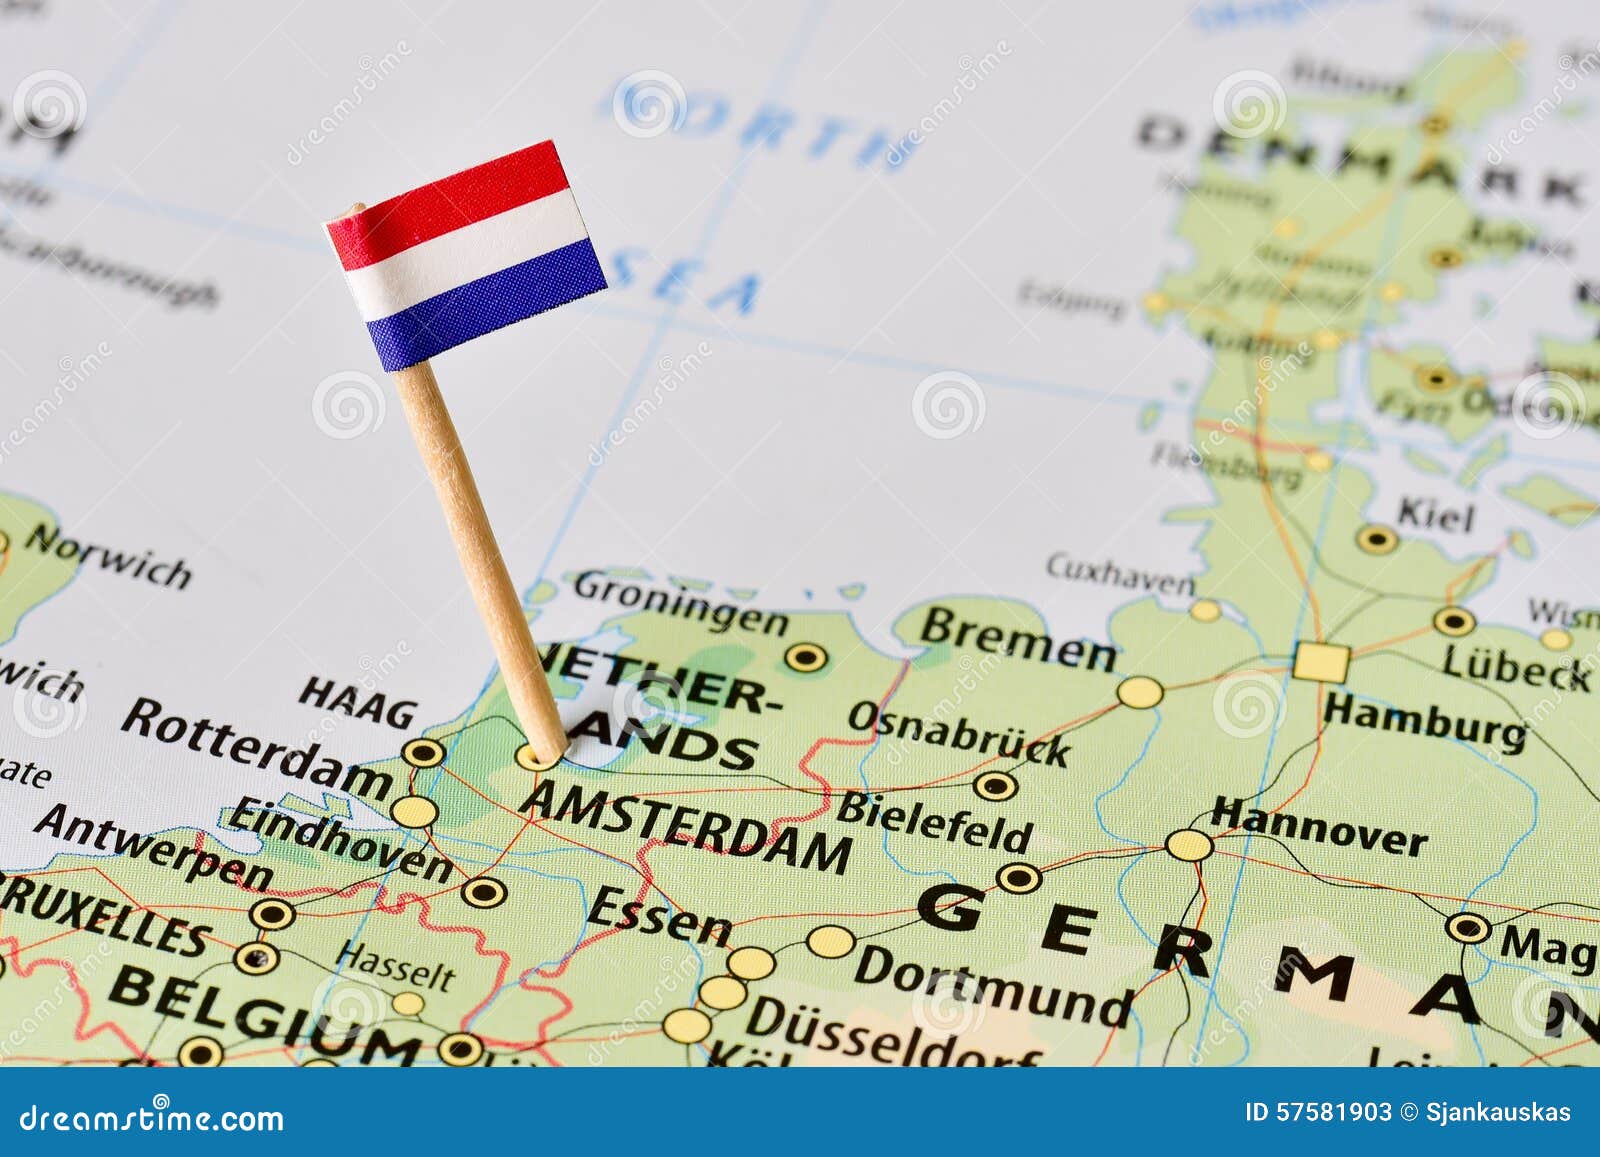 netherlands flag on map